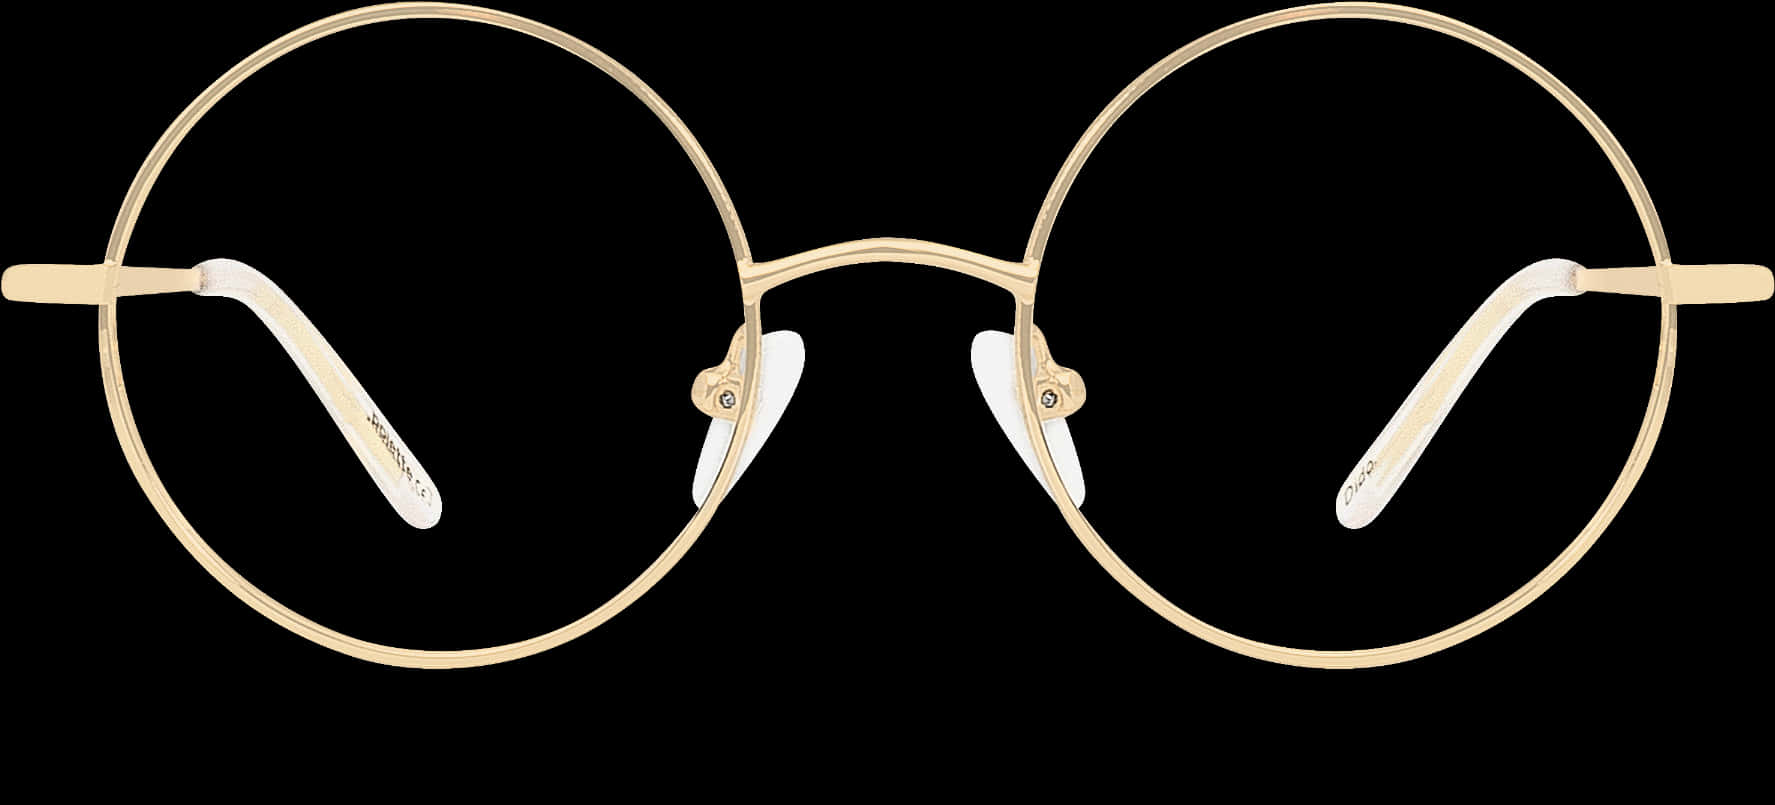 Golden Round Eyeglasses Black Background PNG